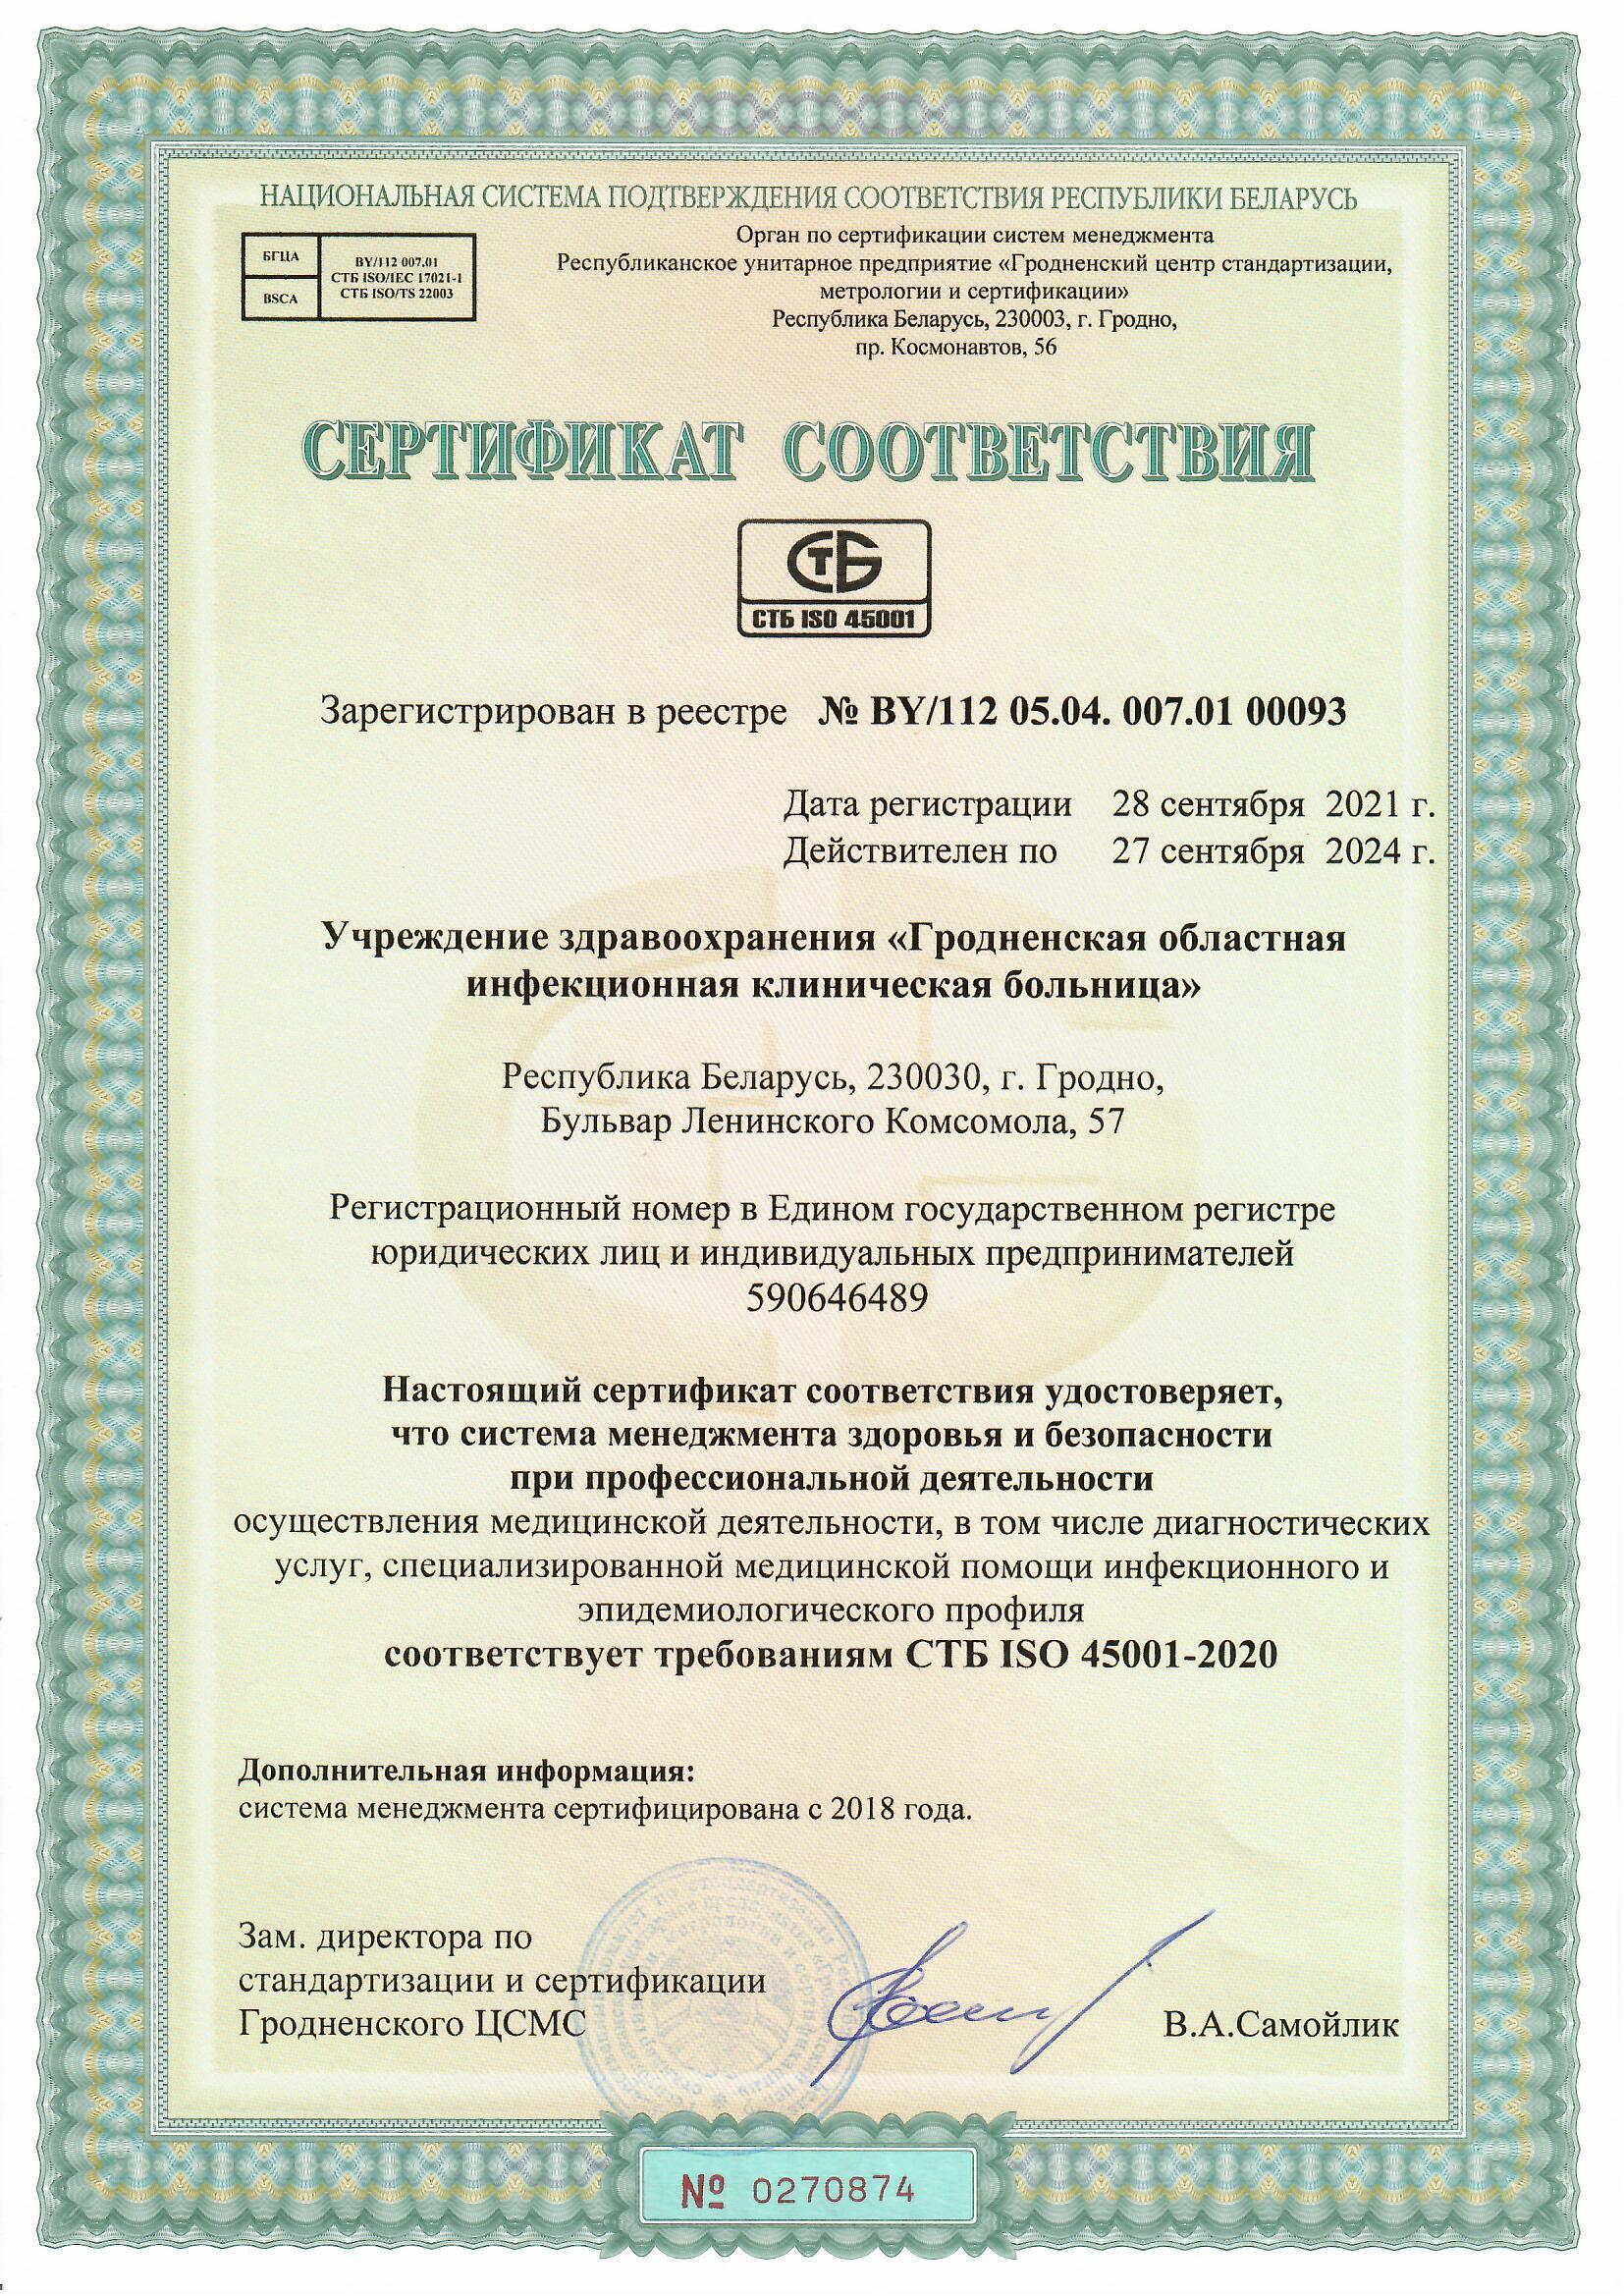 ГОИКБ 2018 Сертификат СМК 1